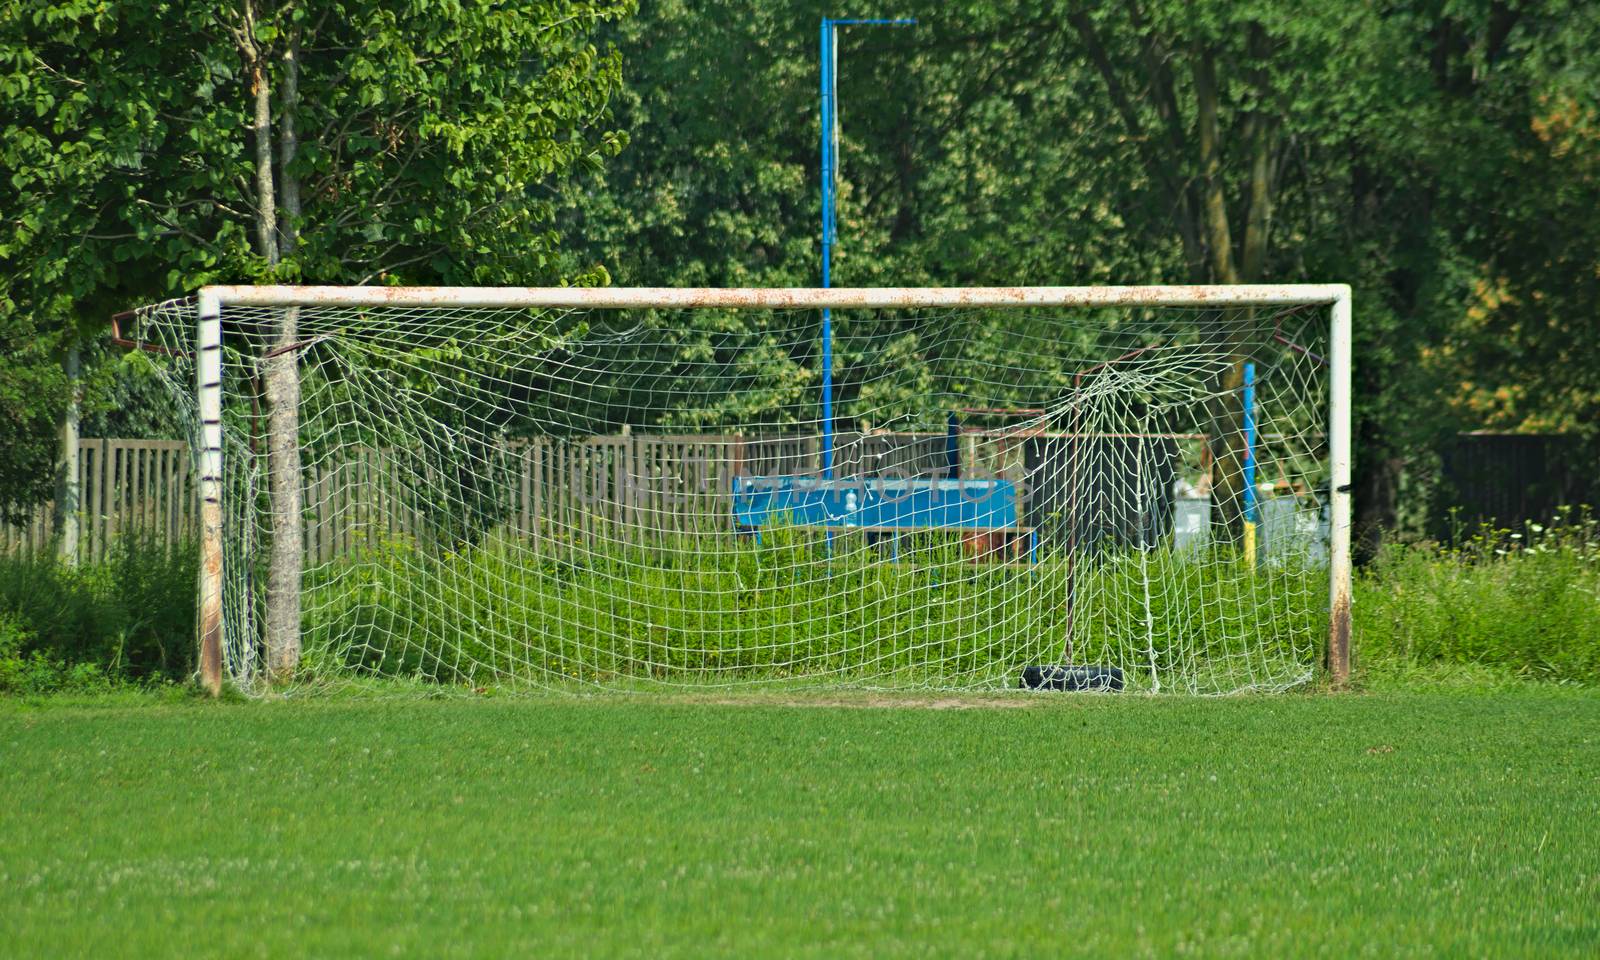 Rustic metal goal gate on football field by sheriffkule